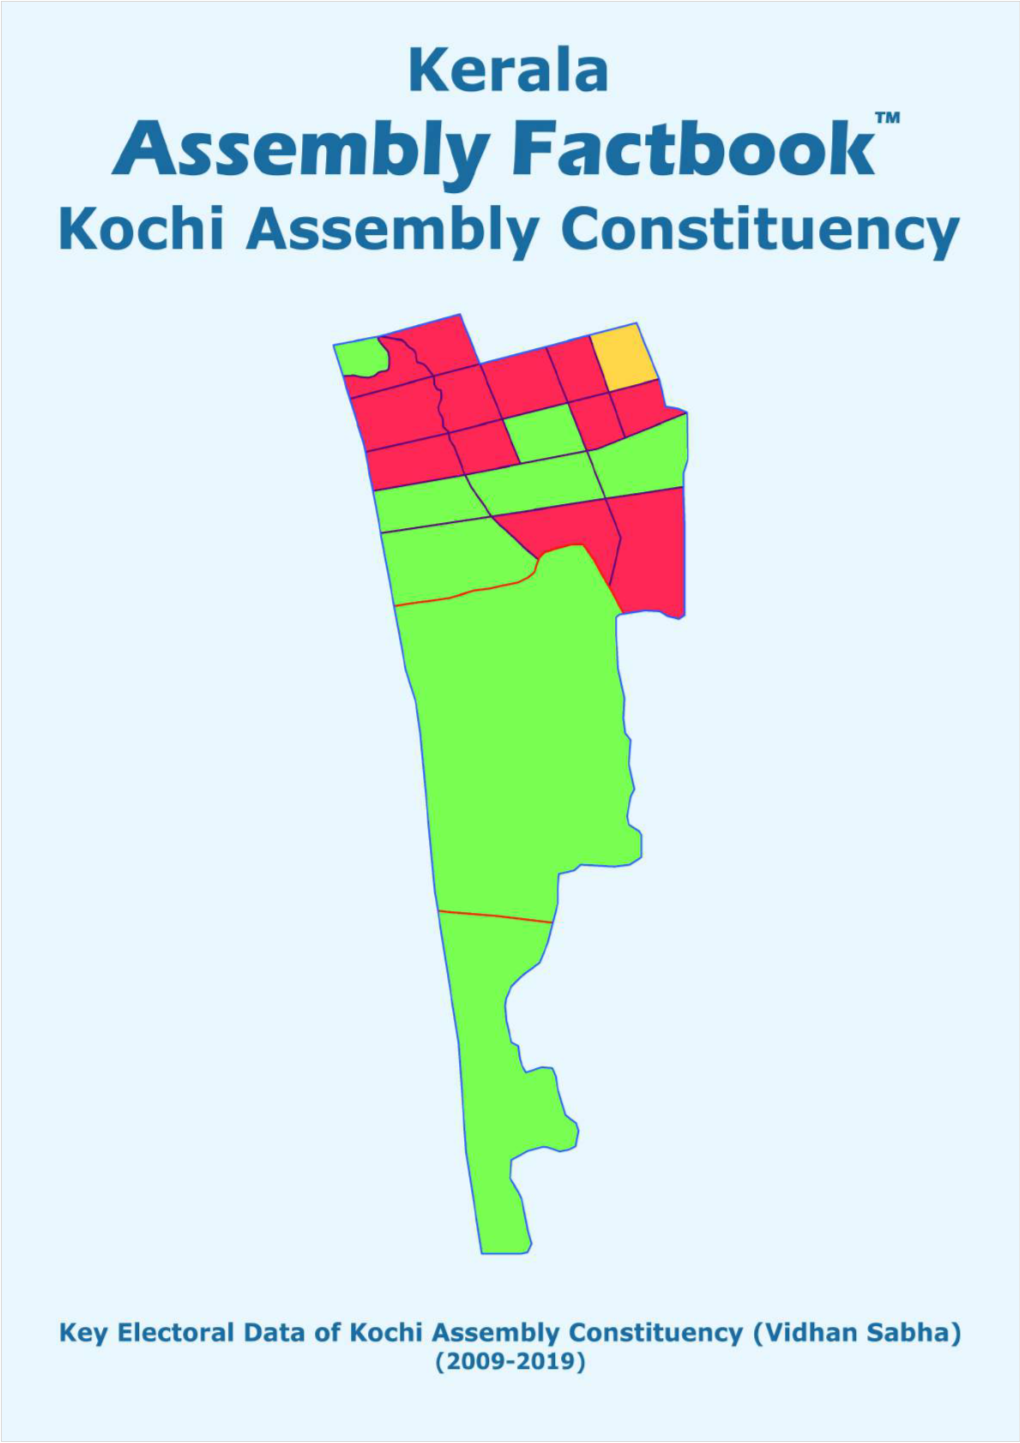 Kochi Assembly Kerala Factbook